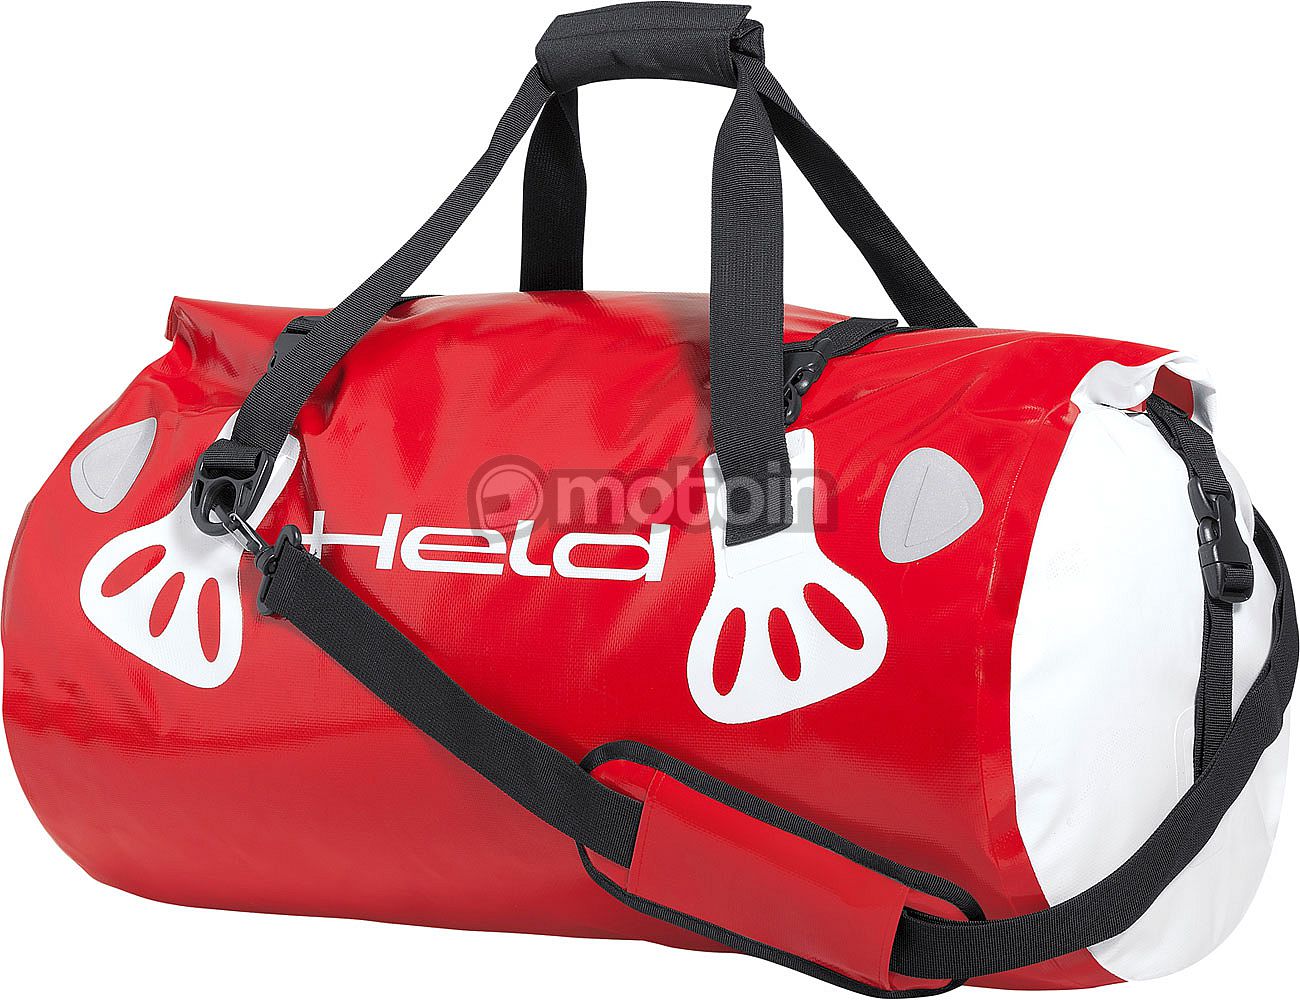 Held Carry Bag, bolsa de viaje